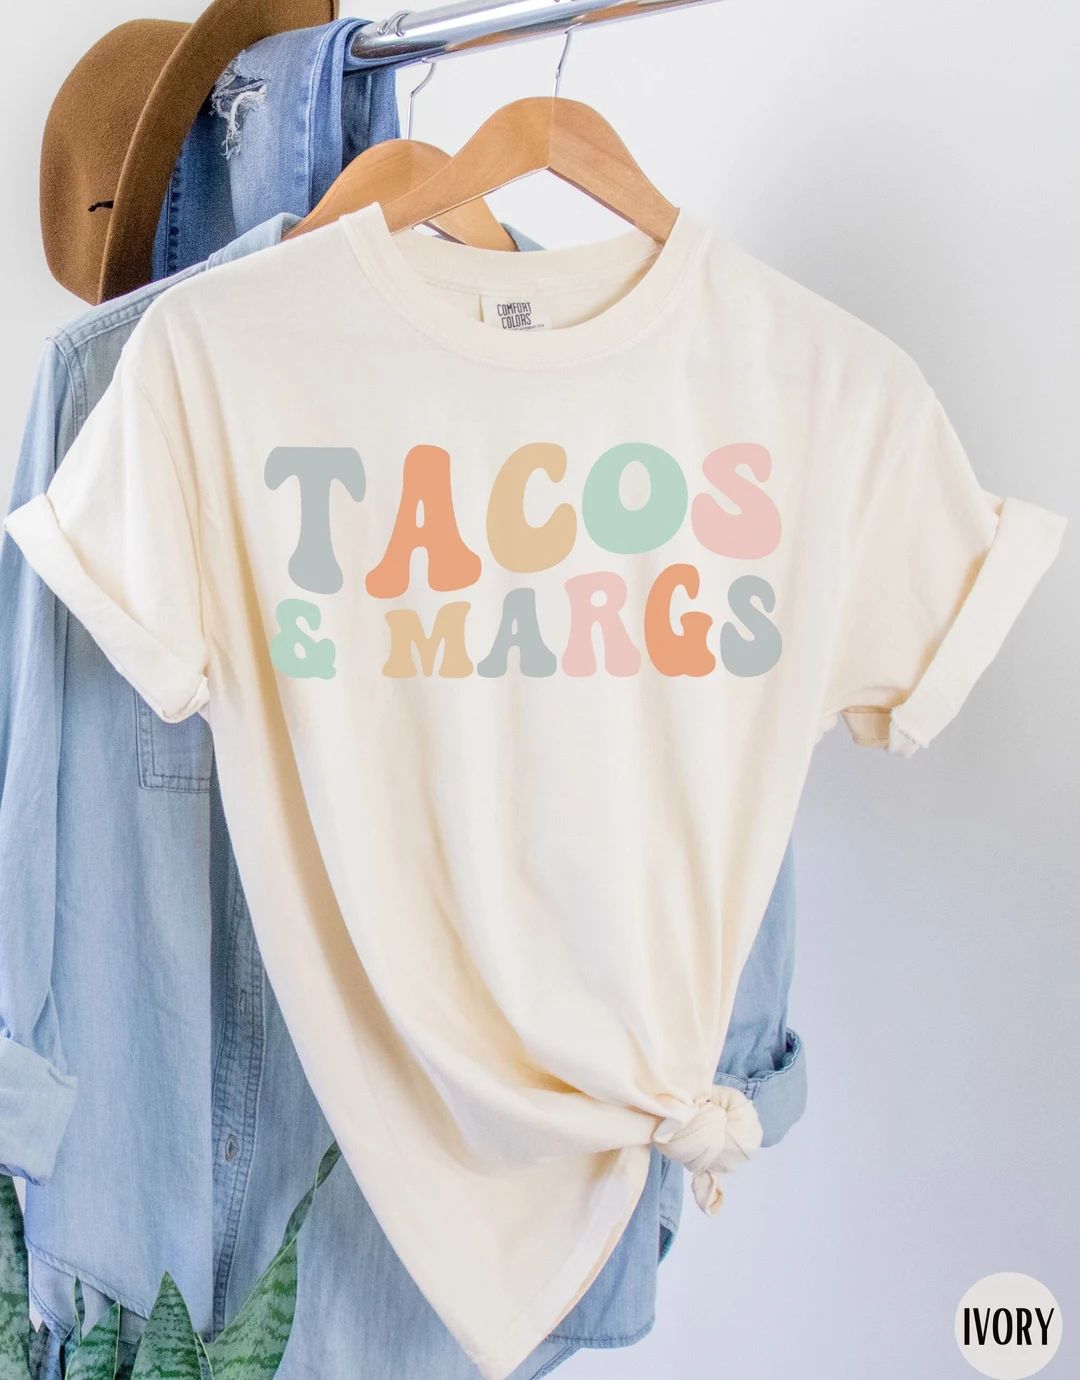 Tacos And Margaritas Shirt, Retro Cinco De Mayo Fiesta Party Shirts, Margarita Shirts, Taco Lover... | Etsy (US)